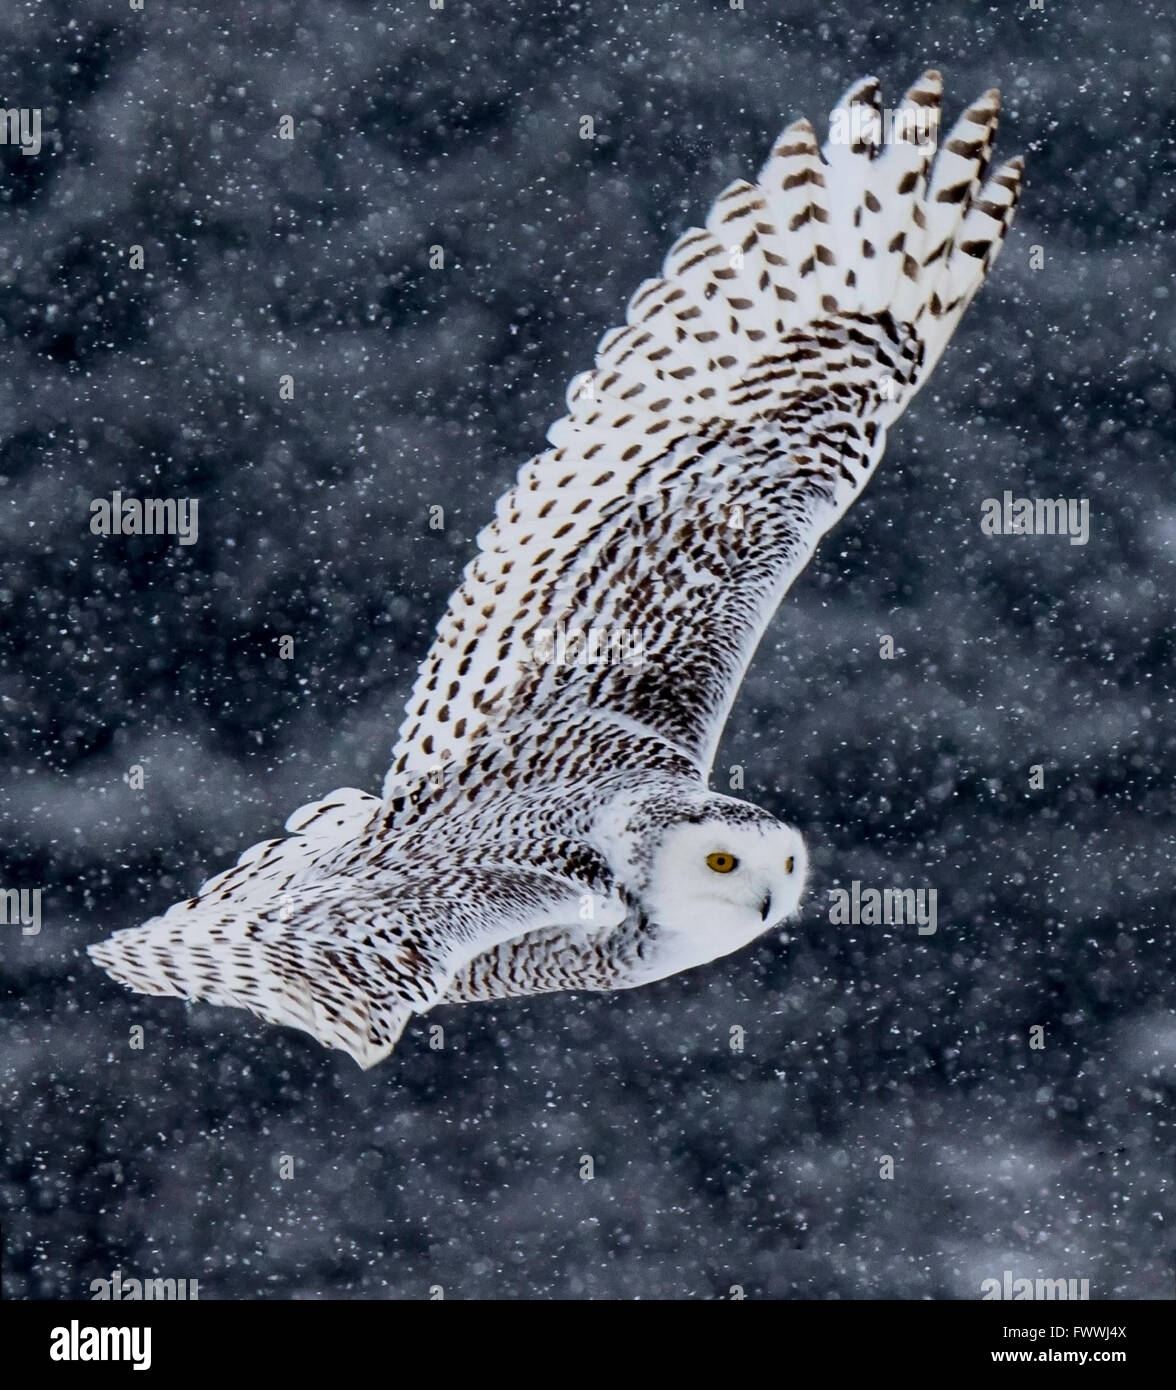 Snowy Owl flying in snow storm Stock Photo - Alamy